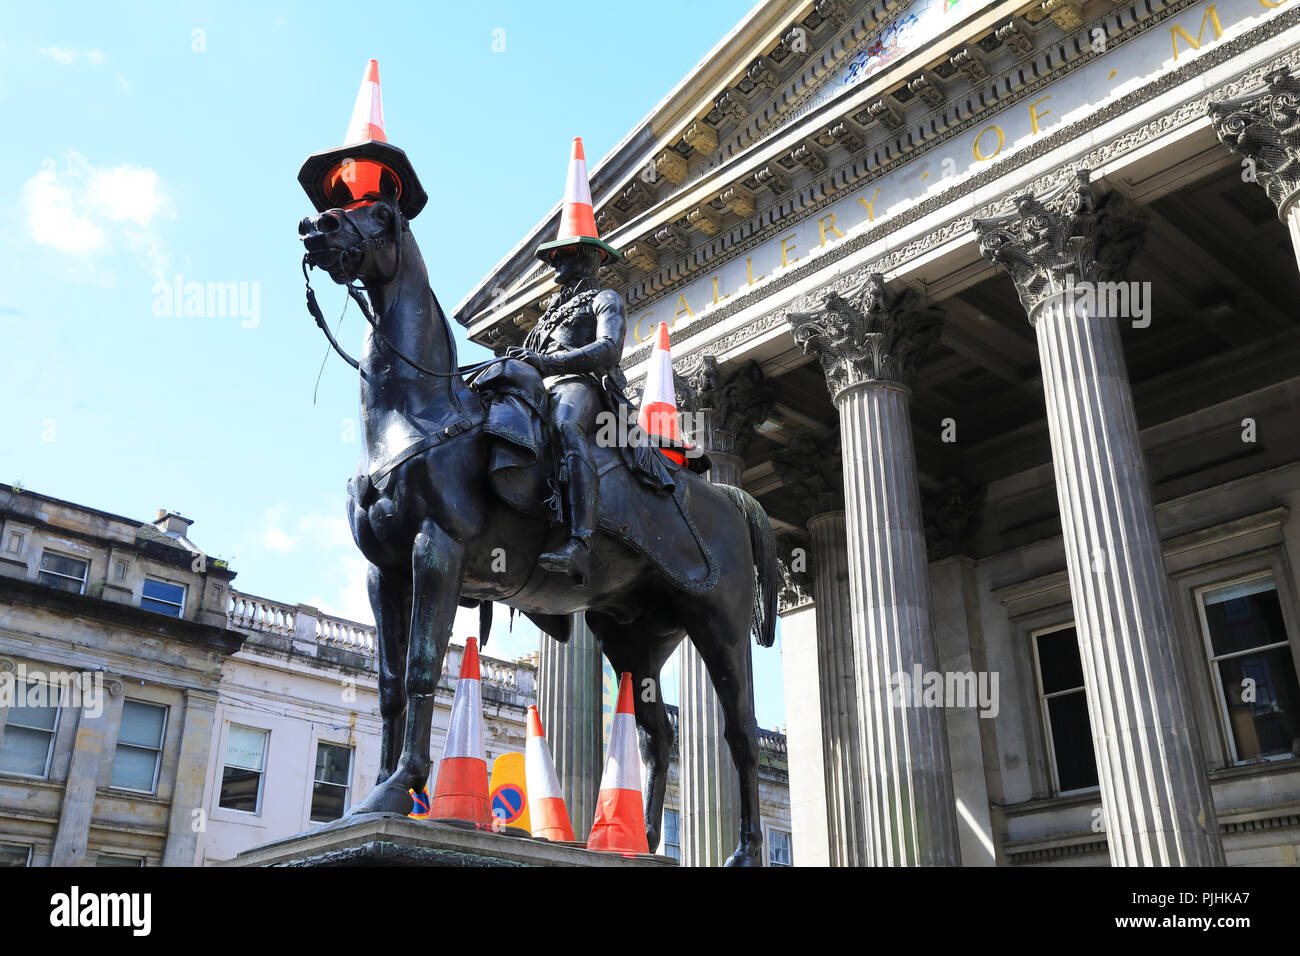 Cônes de circulation sur la statue du duc de Wellington à l'extérieur de la galerie d'Art Moderne, sont venus à représenter l'identité culturelle de Glasgow en Écosse Banque D'Images